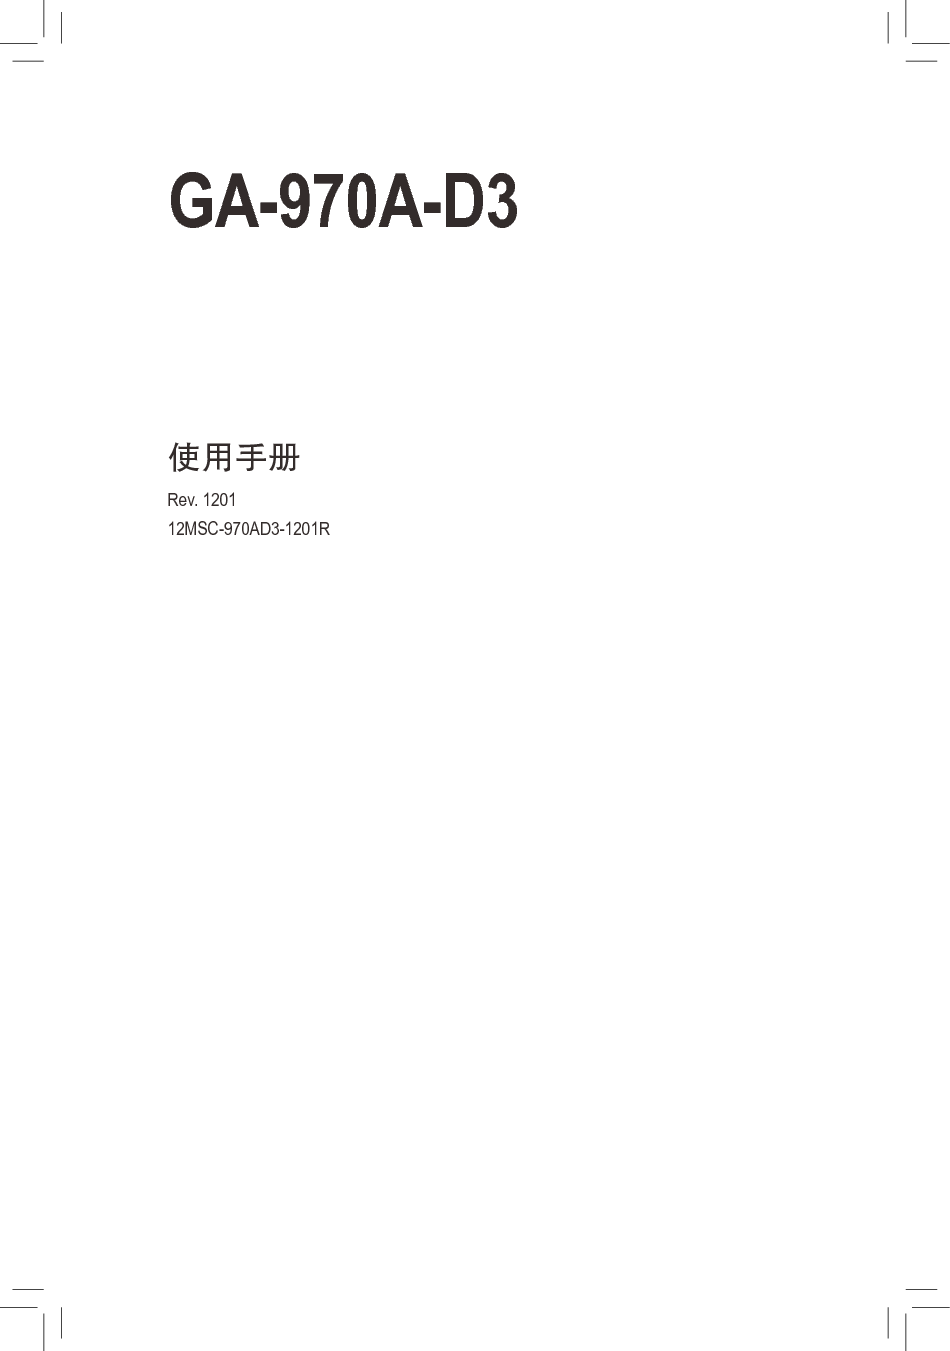 技嘉 Gigabyte GA-970A-D3 1201版 使用手册 封面